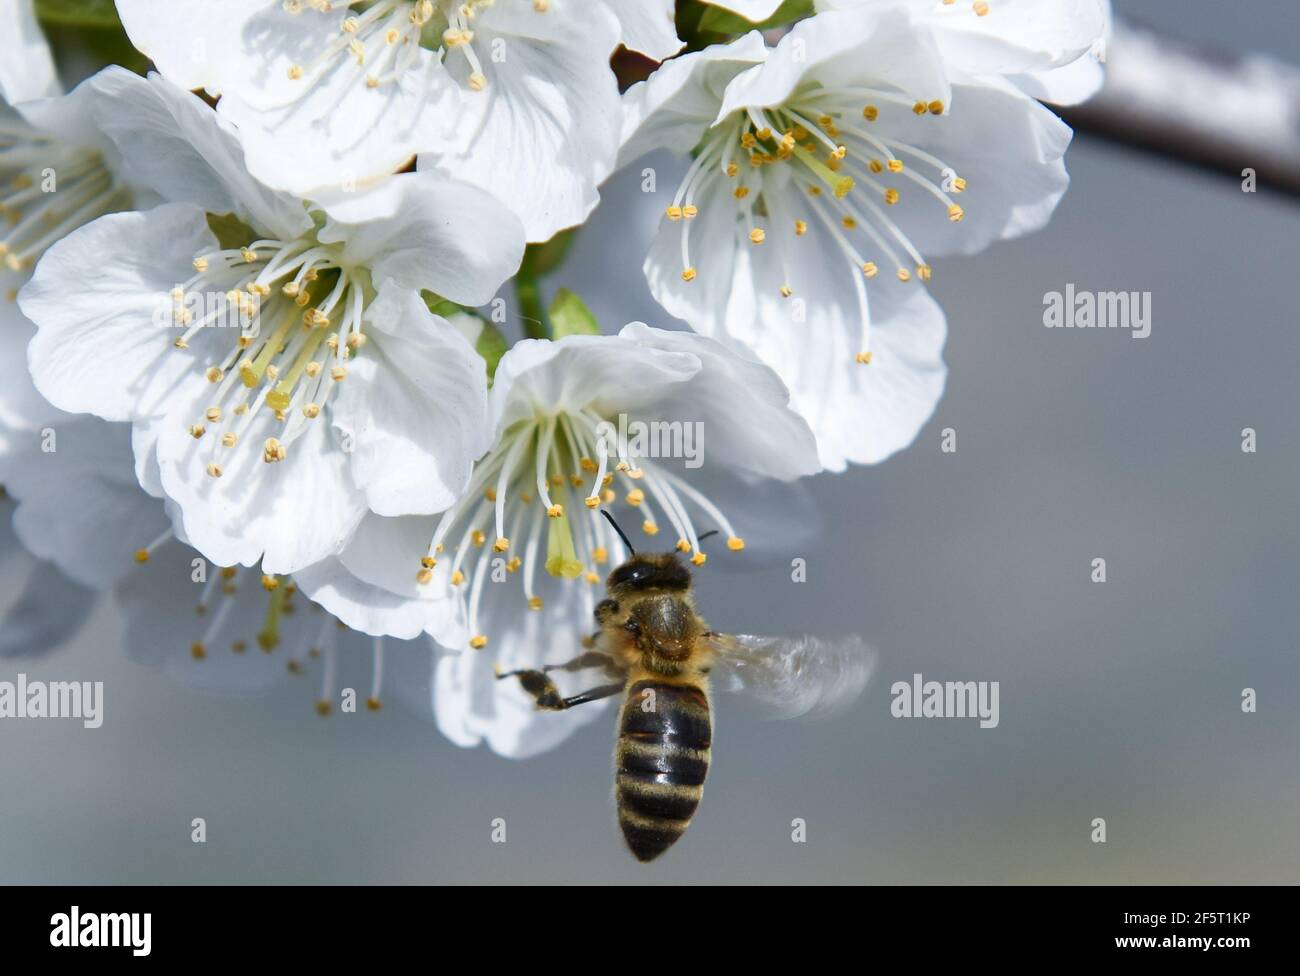 Une abeille travaille parmi les fleurs de cerisier entre les fermes en terrasse, pendant la floraison à Valdastillas.avec plus d'un million et demi de cerisiers, la région d'Estrémadure de la vallée de Jerte, célèbre chaque année pendant la deuxième moitié de mars le festival de cerisiers en fleurs (Fiesta del Cerezo en Flor), Déclaré d'intérêt touristique national. Cette année, il a été annulé à nouveau en raison de la situation pandémique et outre la fermeture du périmètre régional, il y a eu plusieurs annulations d'hospitalité comme beaucoup de visiteurs sont de l'extérieur de l'Estrémadure. Banque D'Images